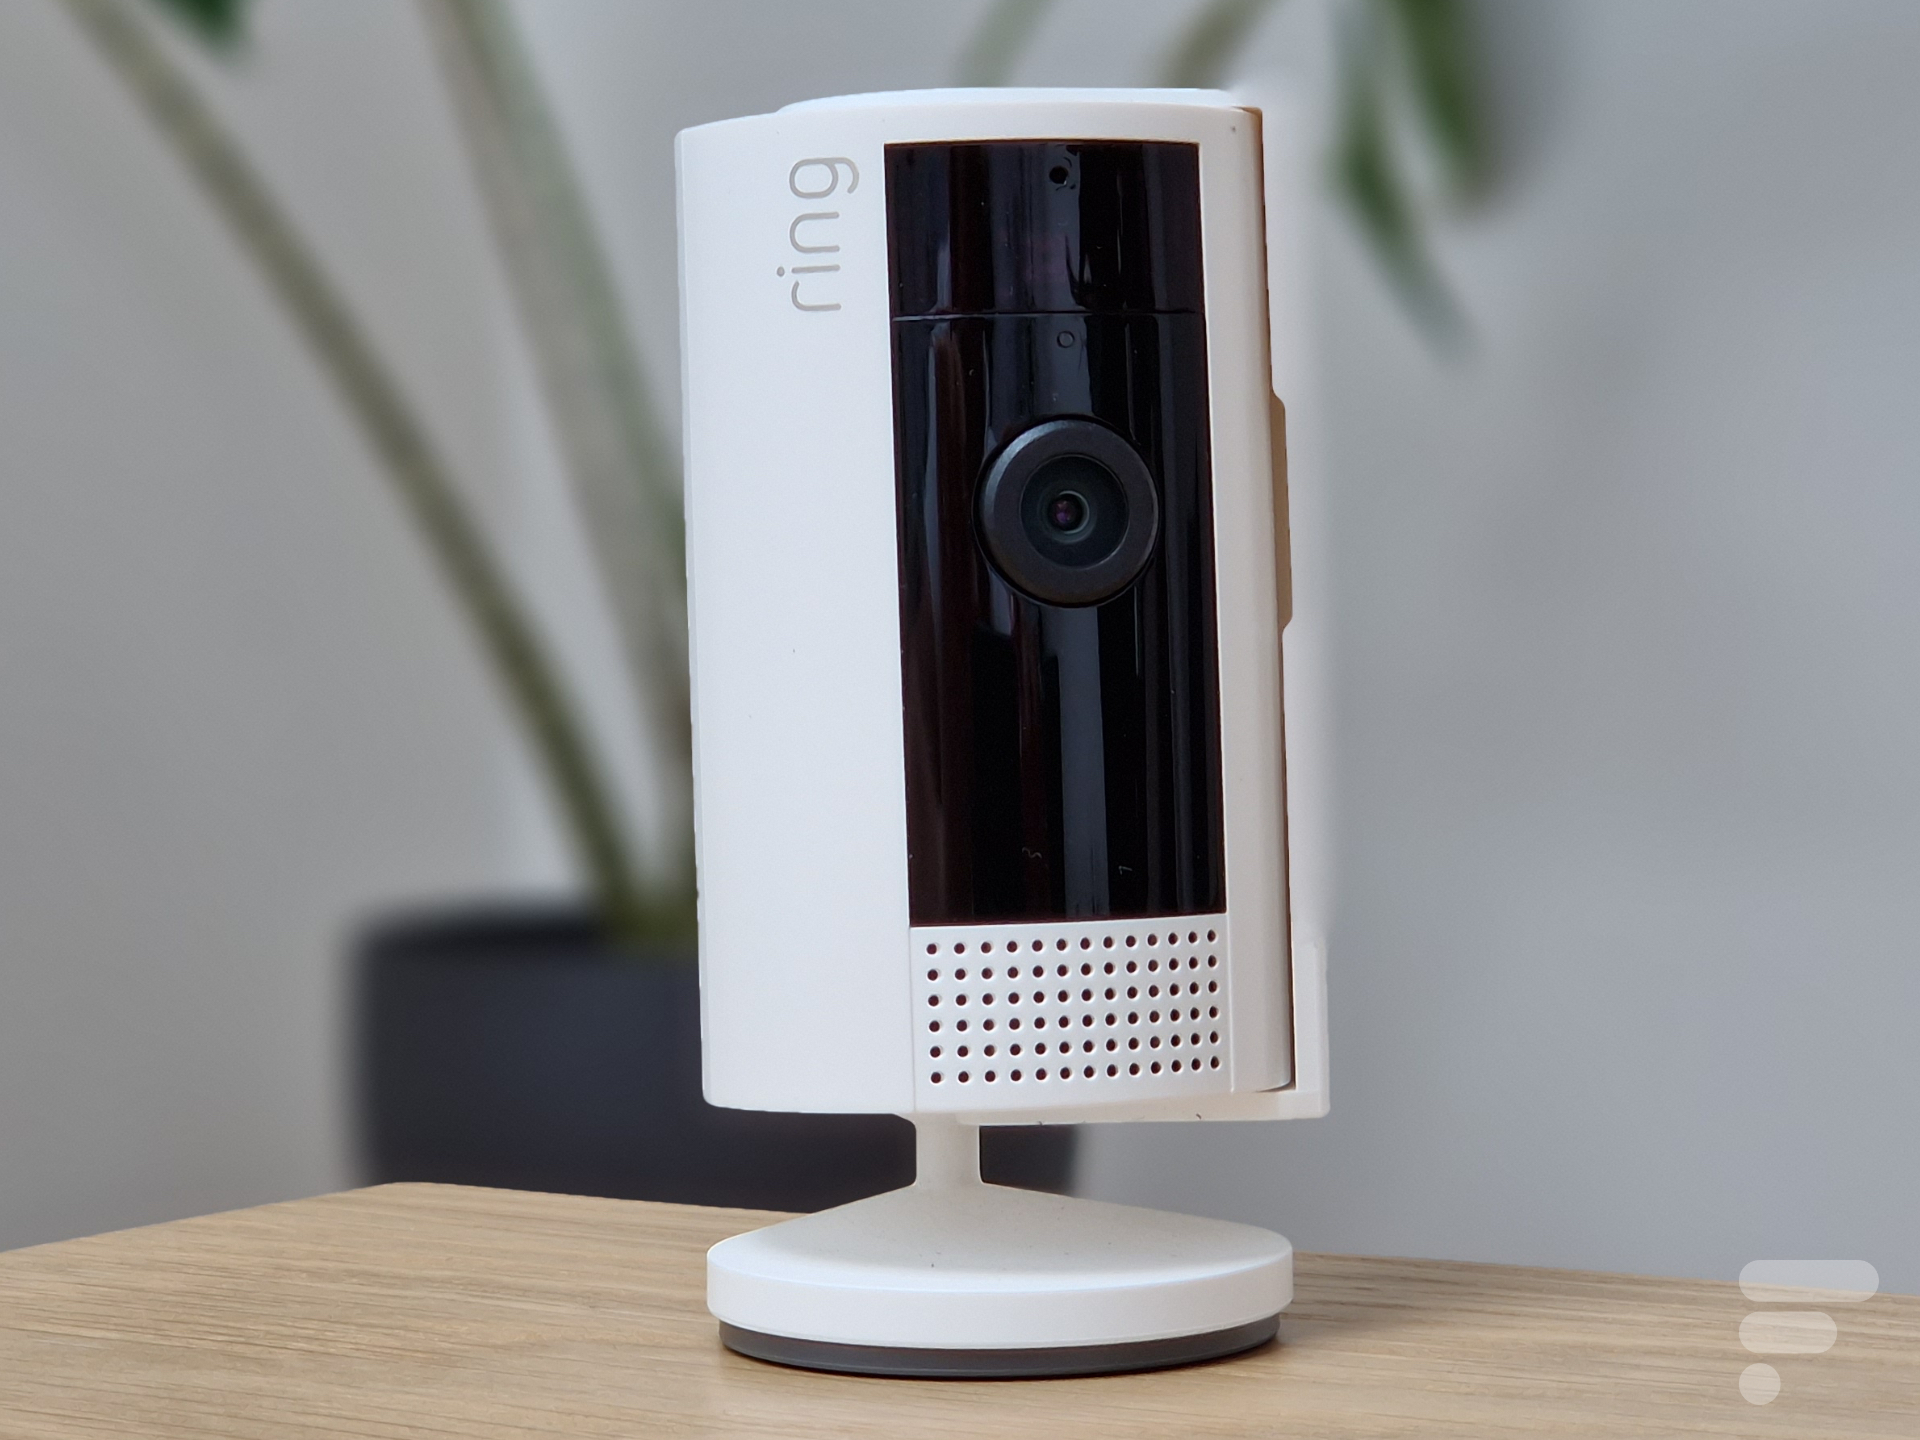 Test : Stick up cam, la caméra de surveillance Ring 3ème génération 